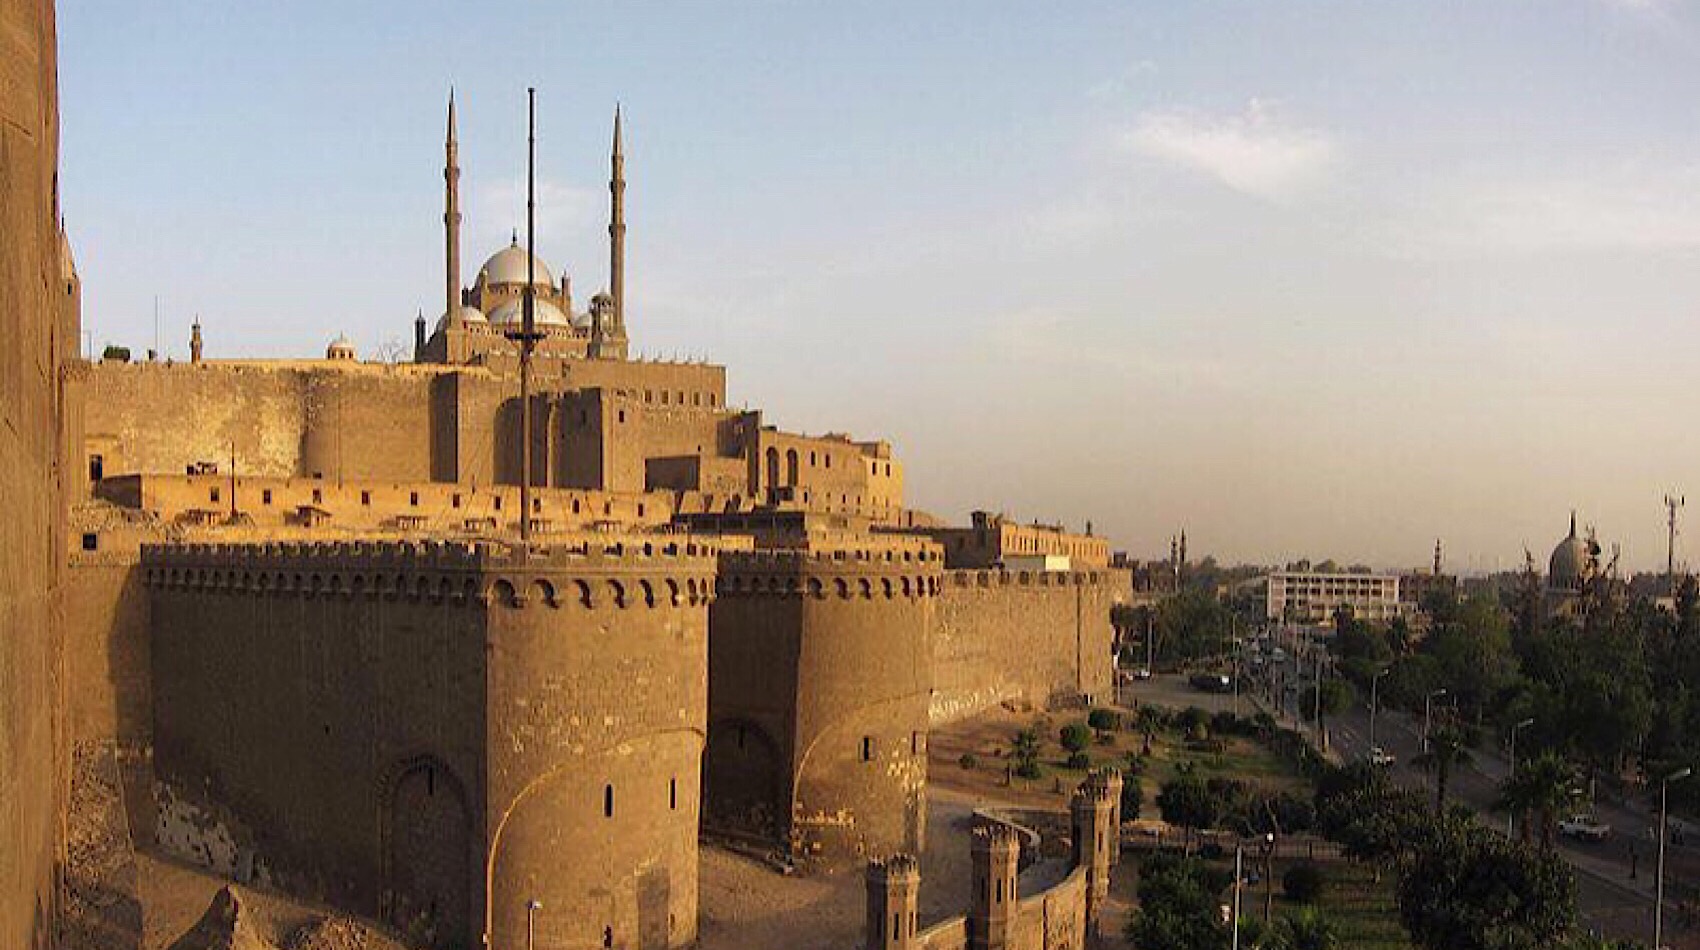 Salah Eldin Citadel